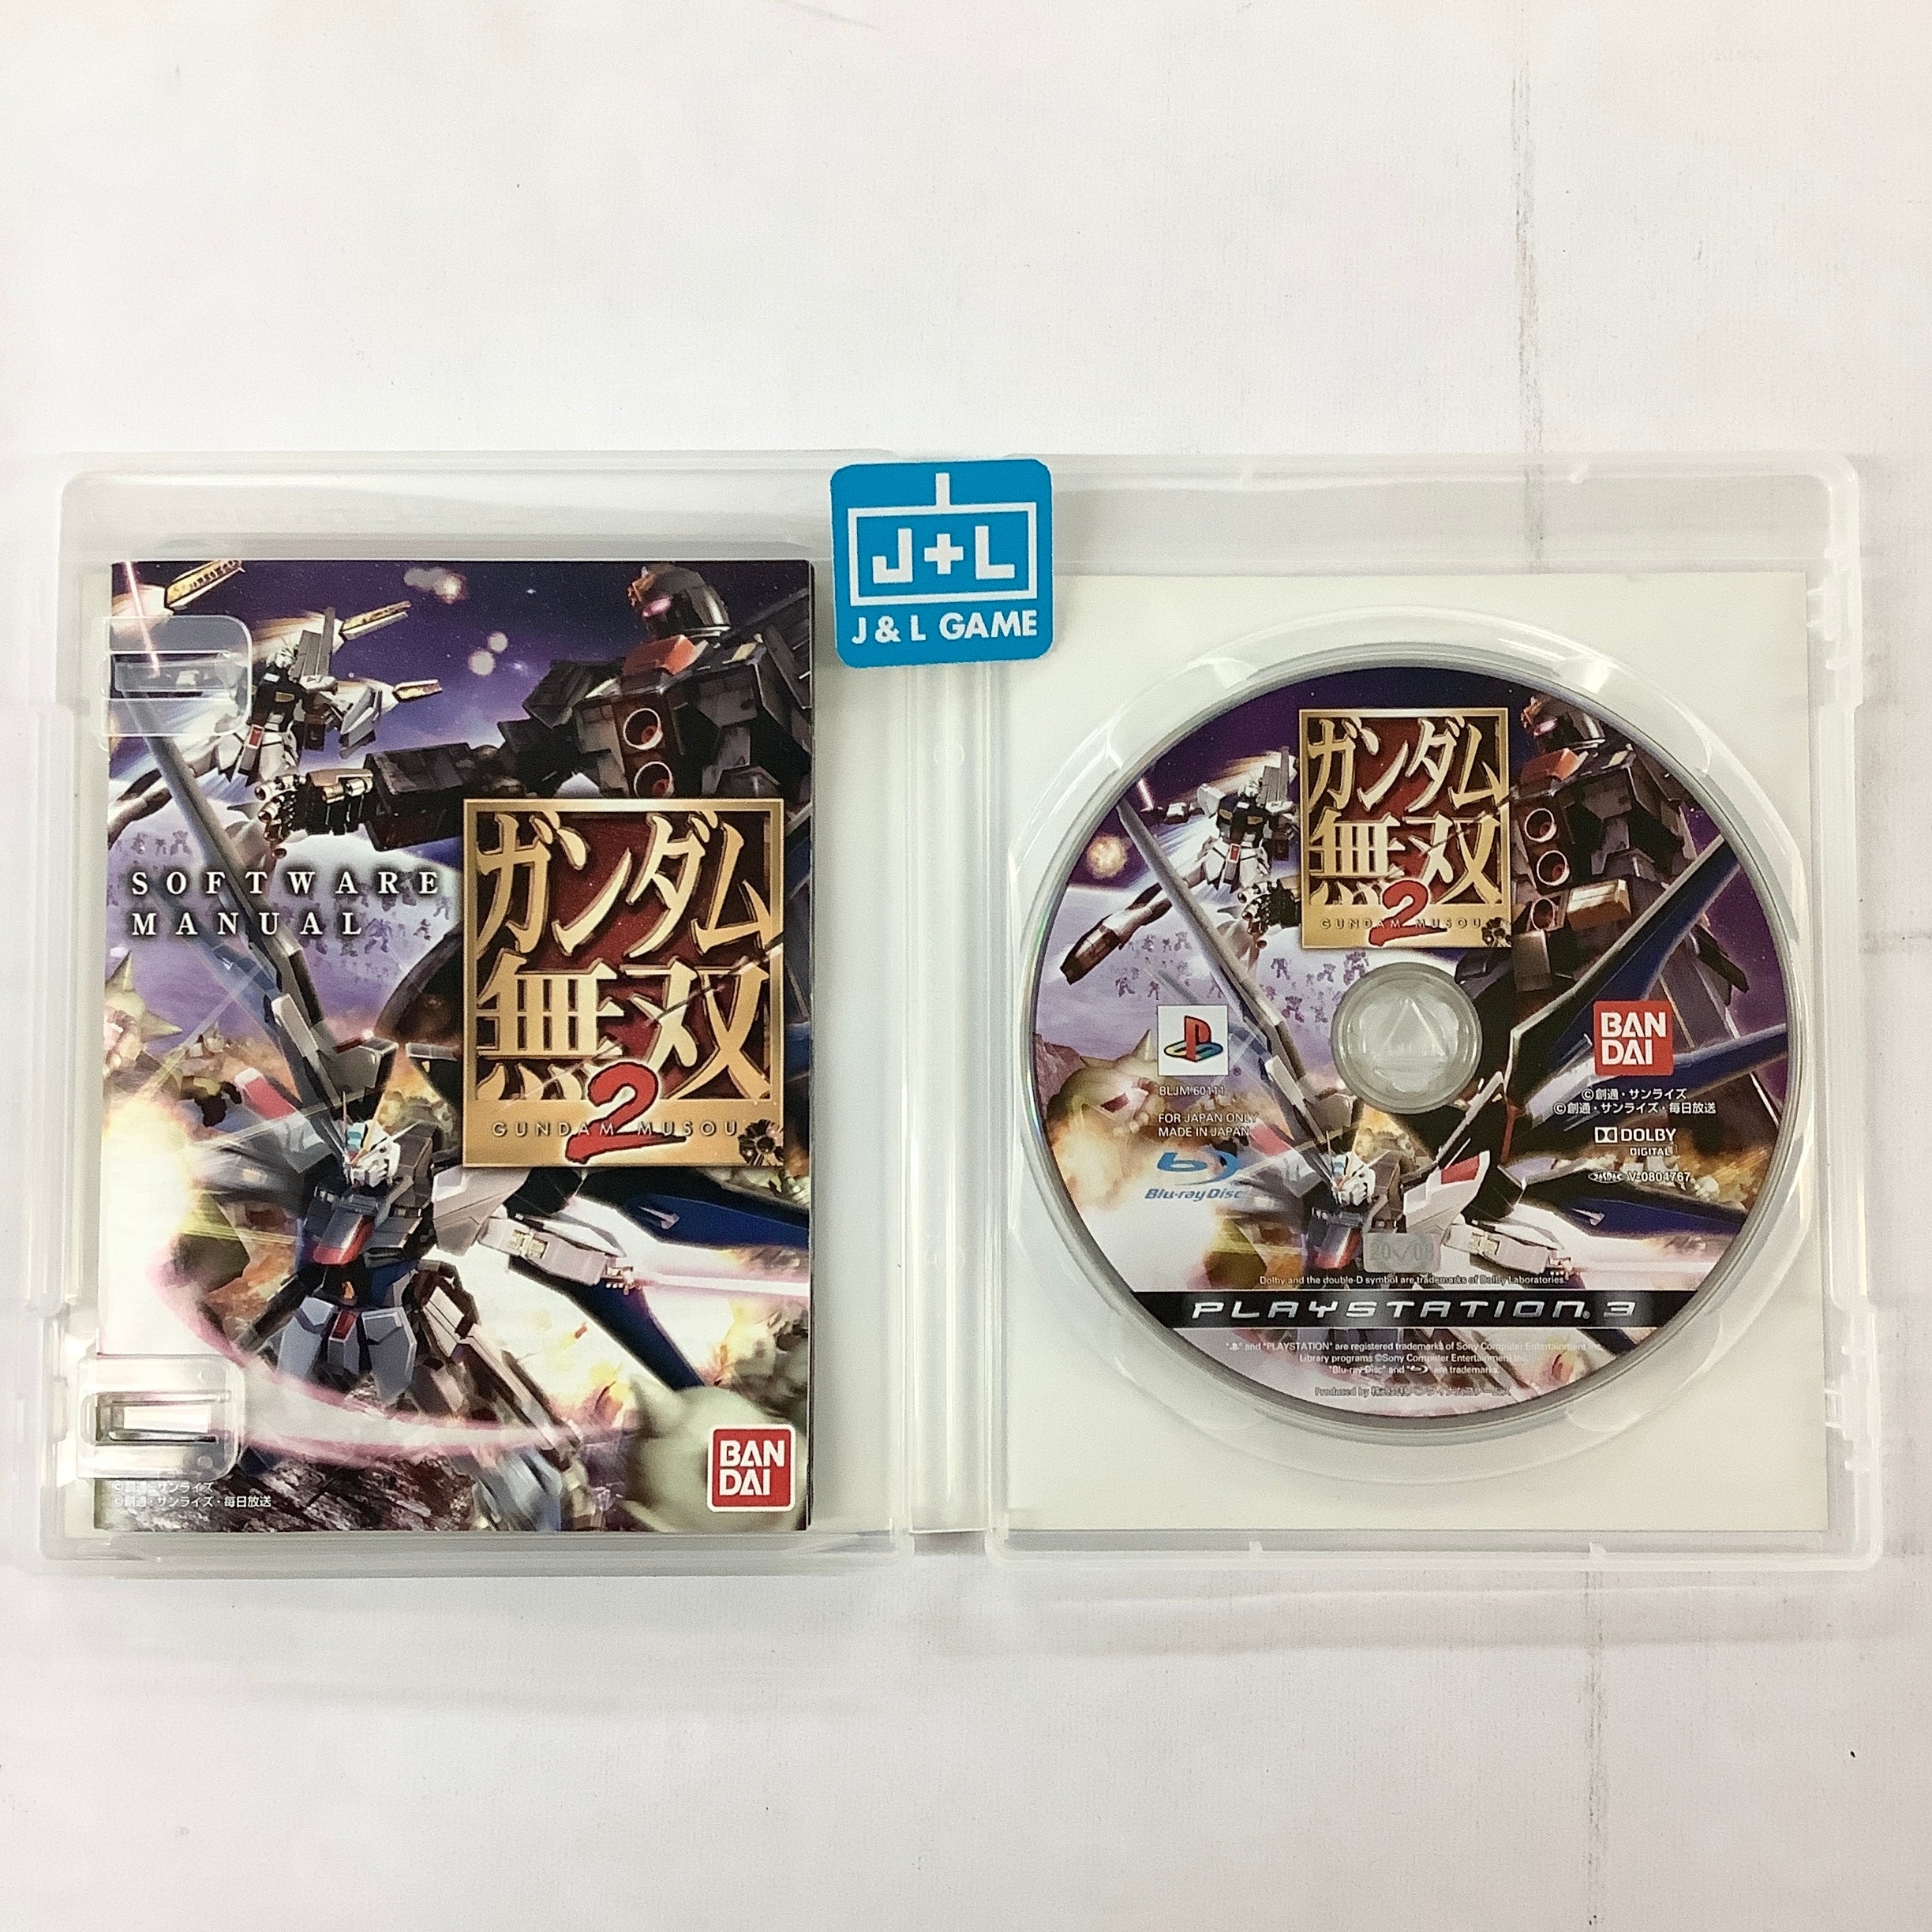 Gundam Musou 2 - (PS3) PlayStation 3 [Pre-Owned] (Japanese Import) Video Games Bandai Namco Games   